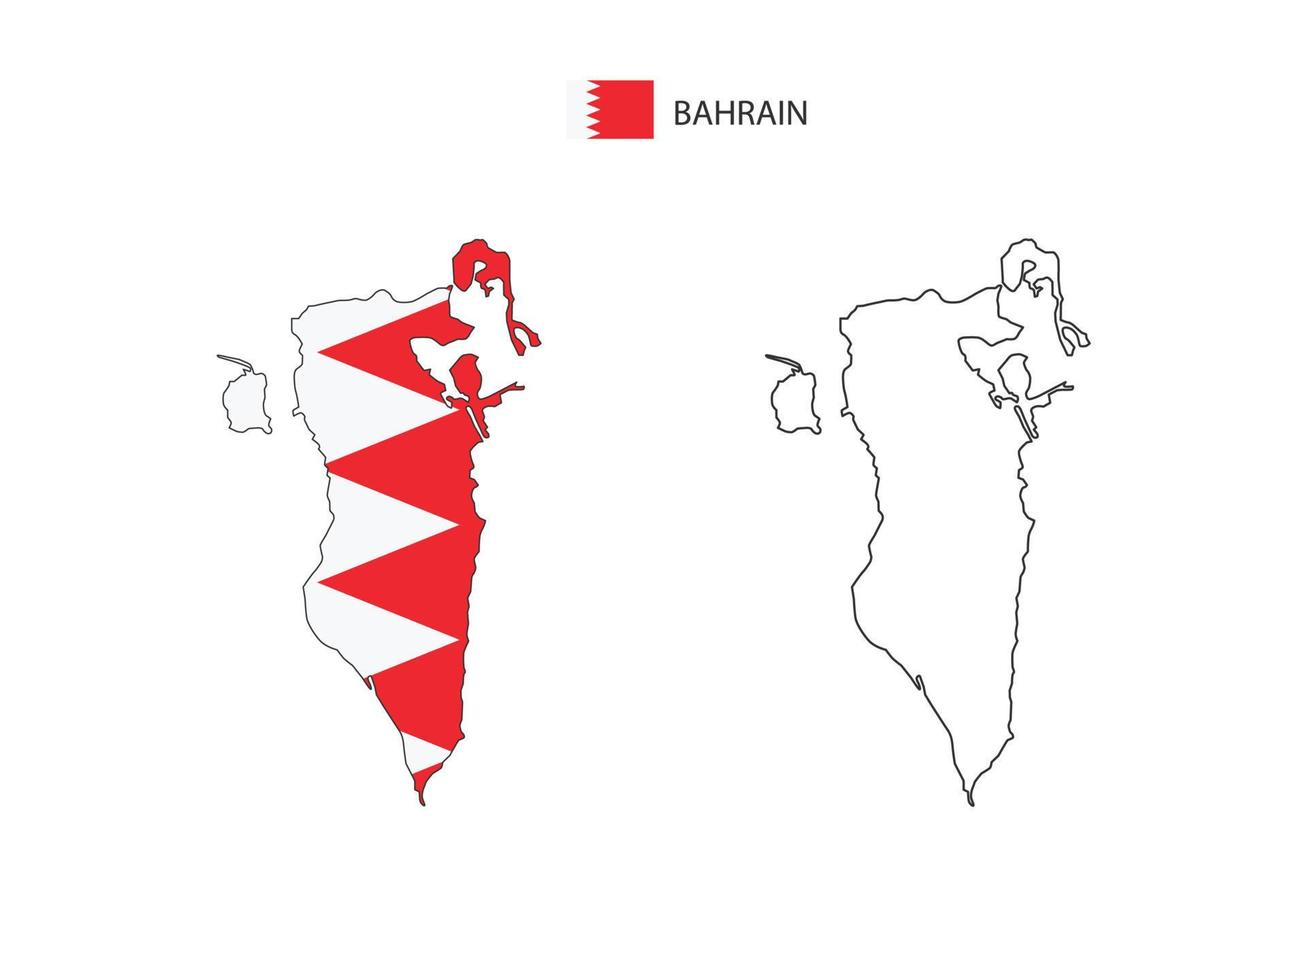 vetor da cidade do mapa do bahrein dividido pelo estilo de simplicidade do contorno. tem 2 versões, versão de linha fina preta e cor da versão da bandeira do país. ambos os mapas estavam no fundo branco.